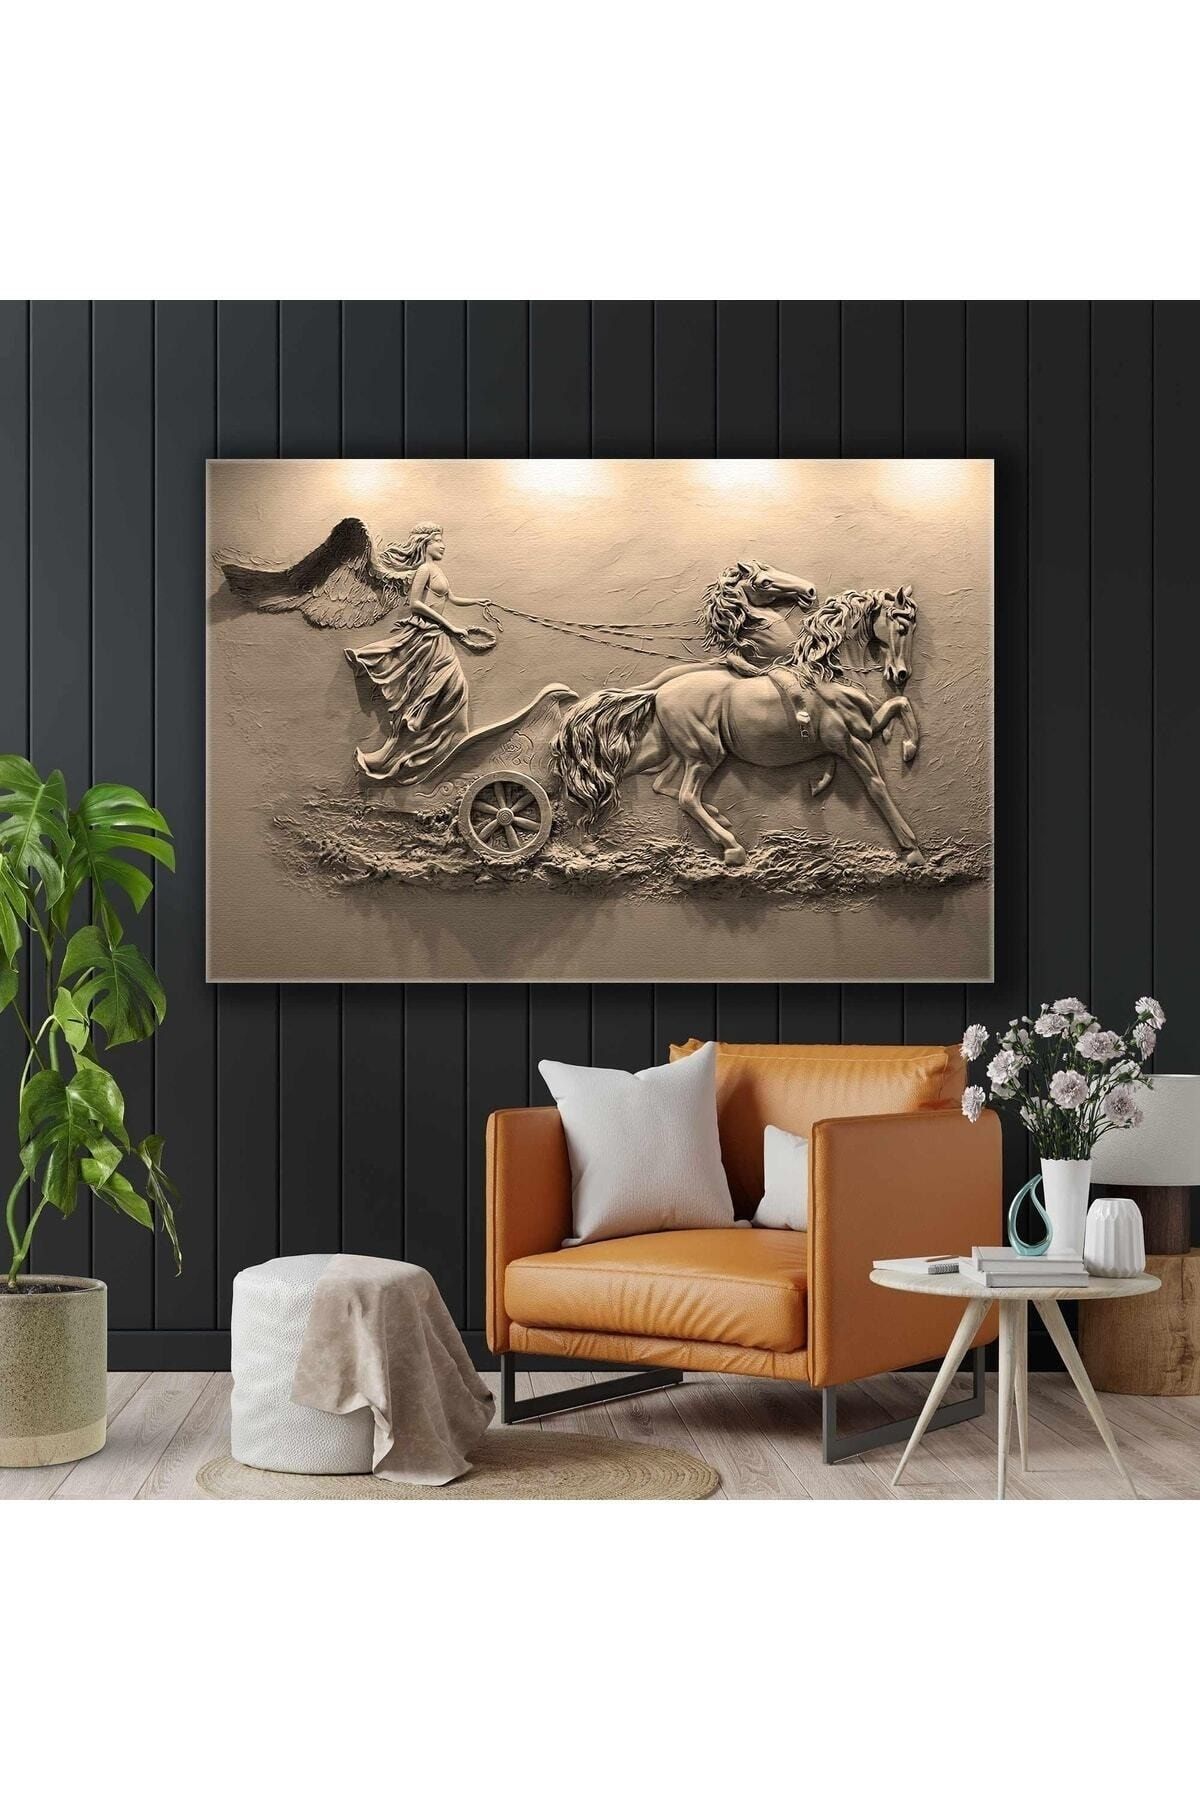 Şehzat At Arabası Süren Kanatlı Melek Sepya Hermes Tanrı Duvar Rölyef Heykel Kanvas Tablo